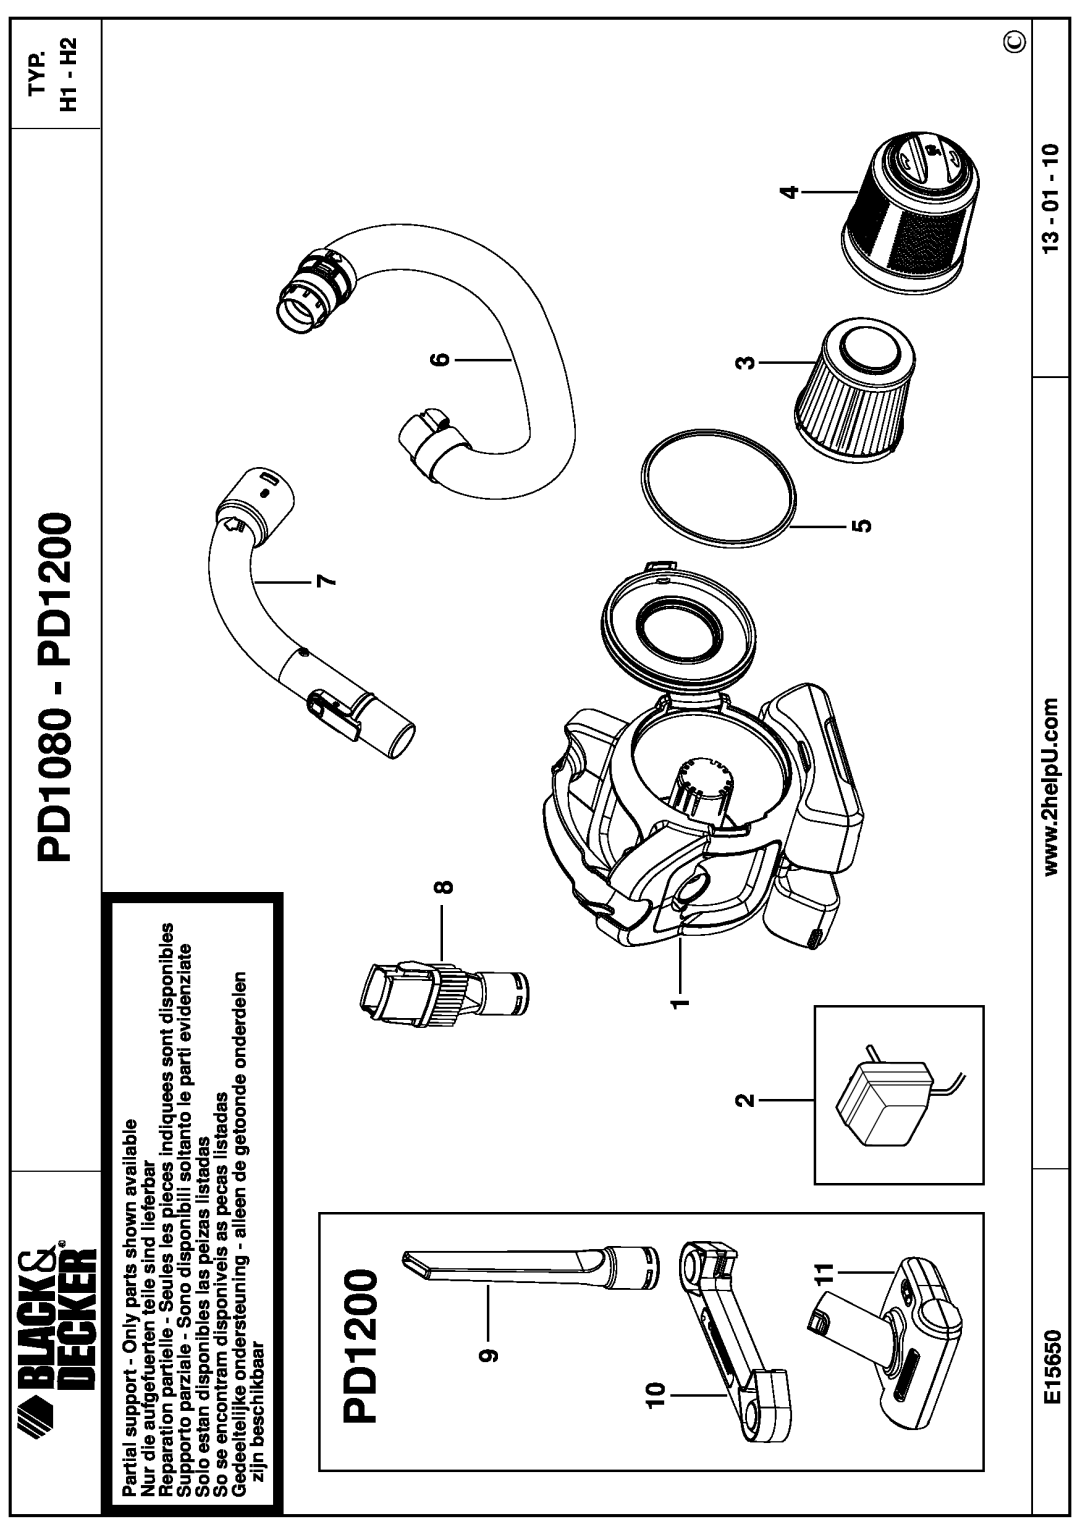 Black & Decker manual TYP H1 - H2, E15650, 13 - 01, PD1080 - PD1200 